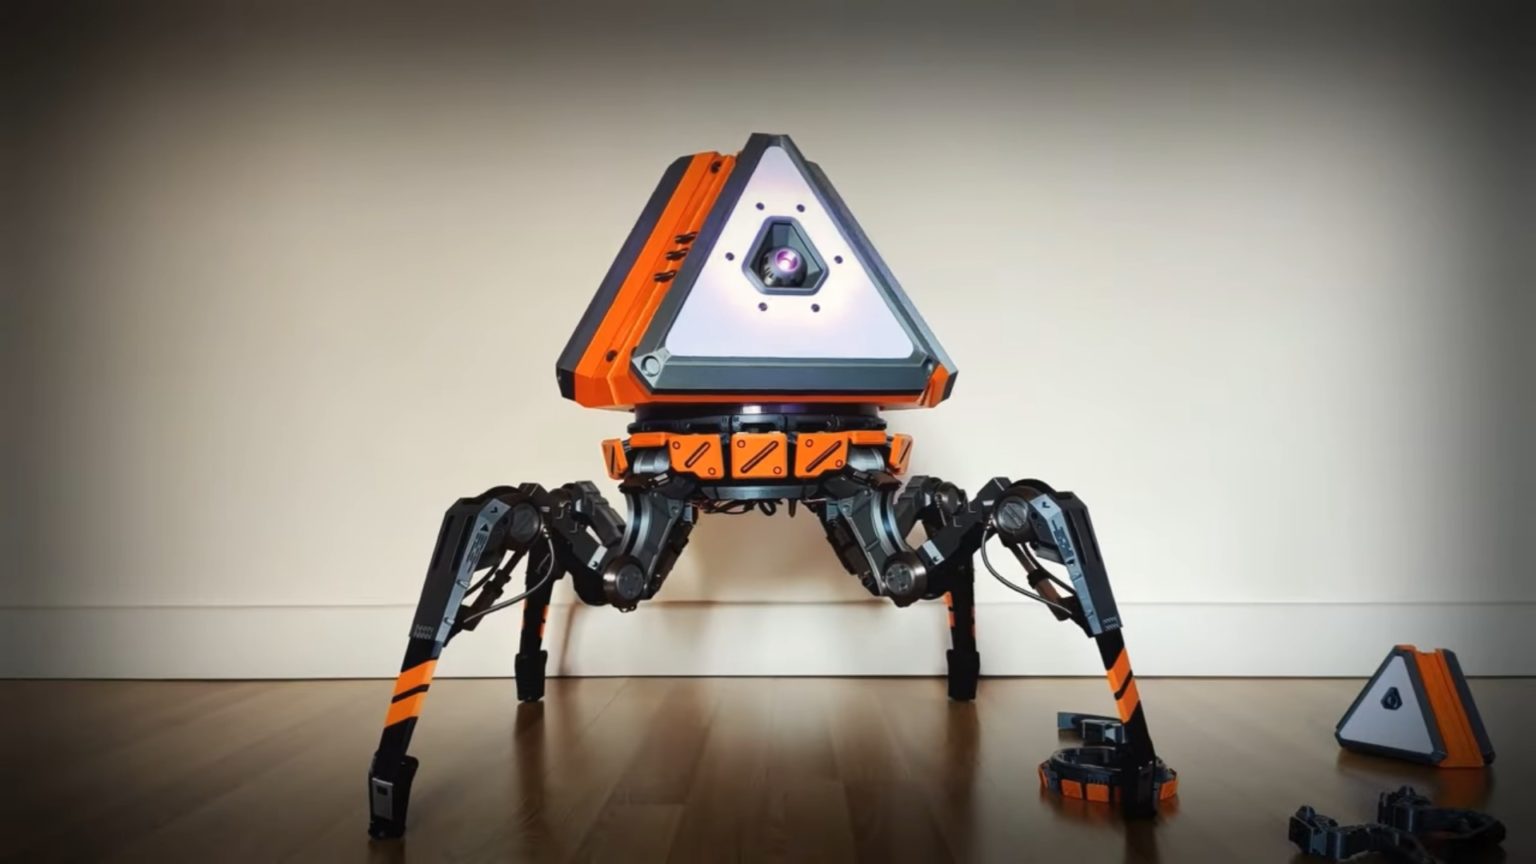 bir apex legends hayranı, gerçek boyutlu, yürüyen, robotik bir ganimet kene yarattı!